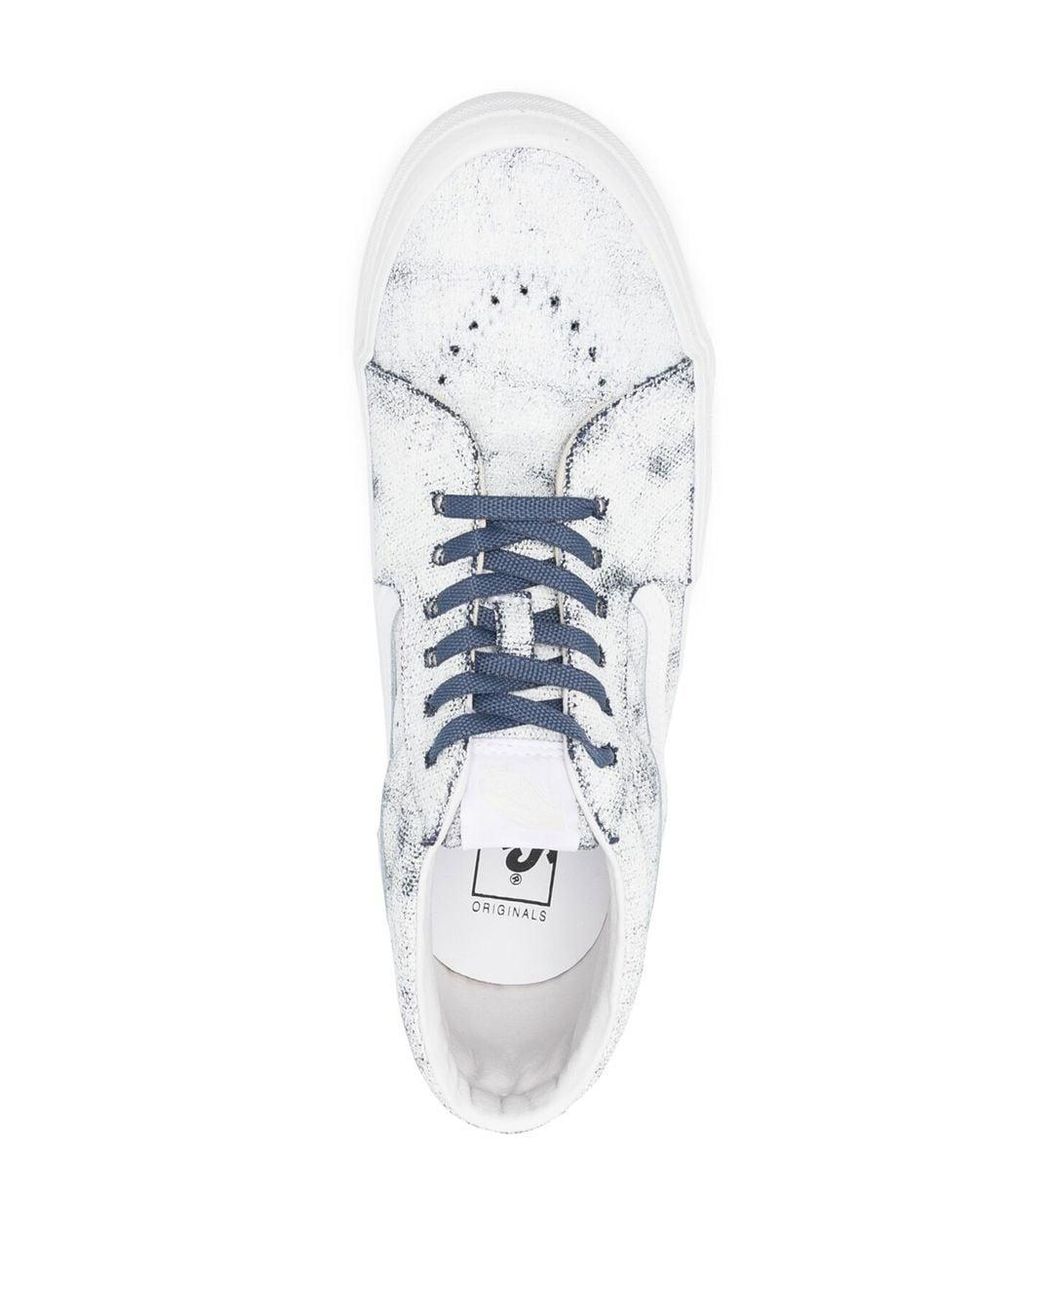 Vans Distressed Mid-top Sneakers in White | Lyst